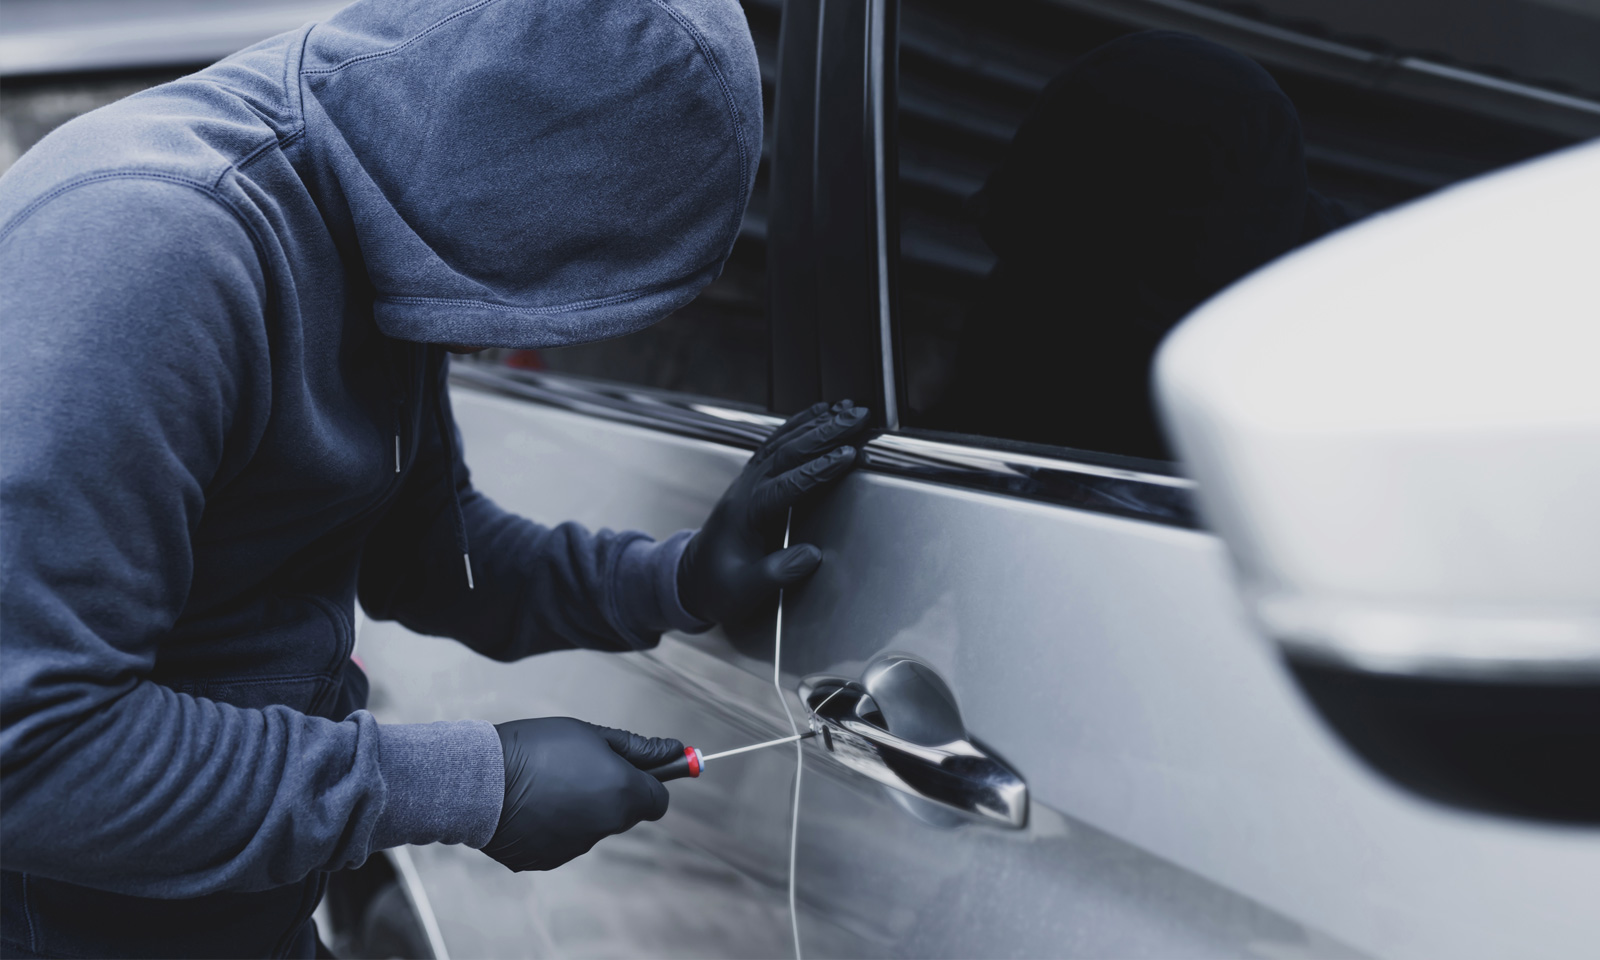 Dicas para proteger o seu carro e evitar roubos - Blog DUB Store